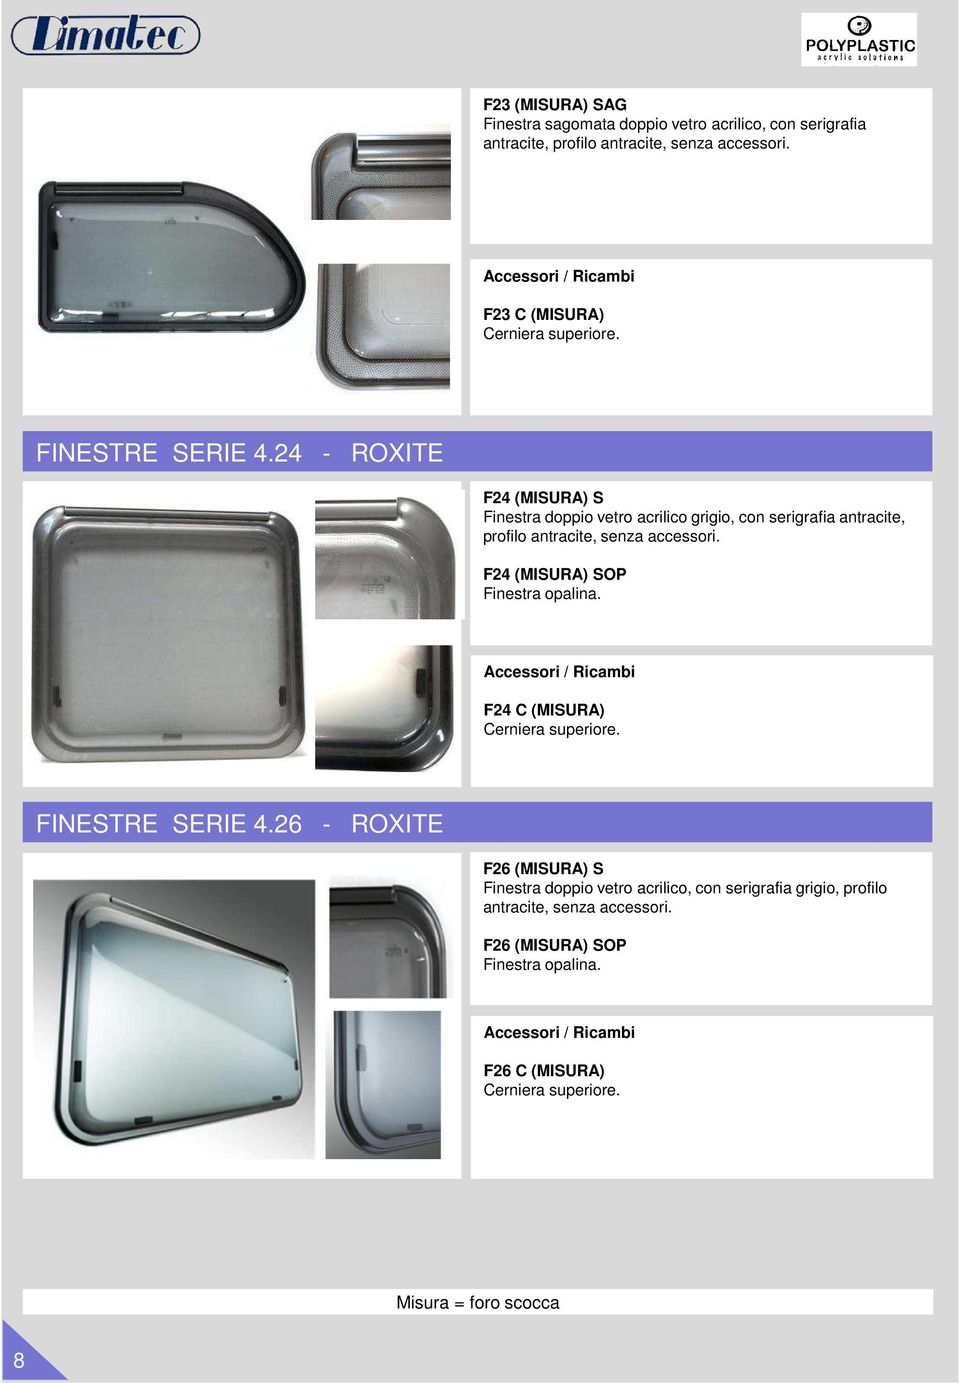 24 - ROXITE F24 (MISURA) S Finestra doppio vetro acrilico grigio, con serigrafia antracite, profilo antracite, senza accessori.